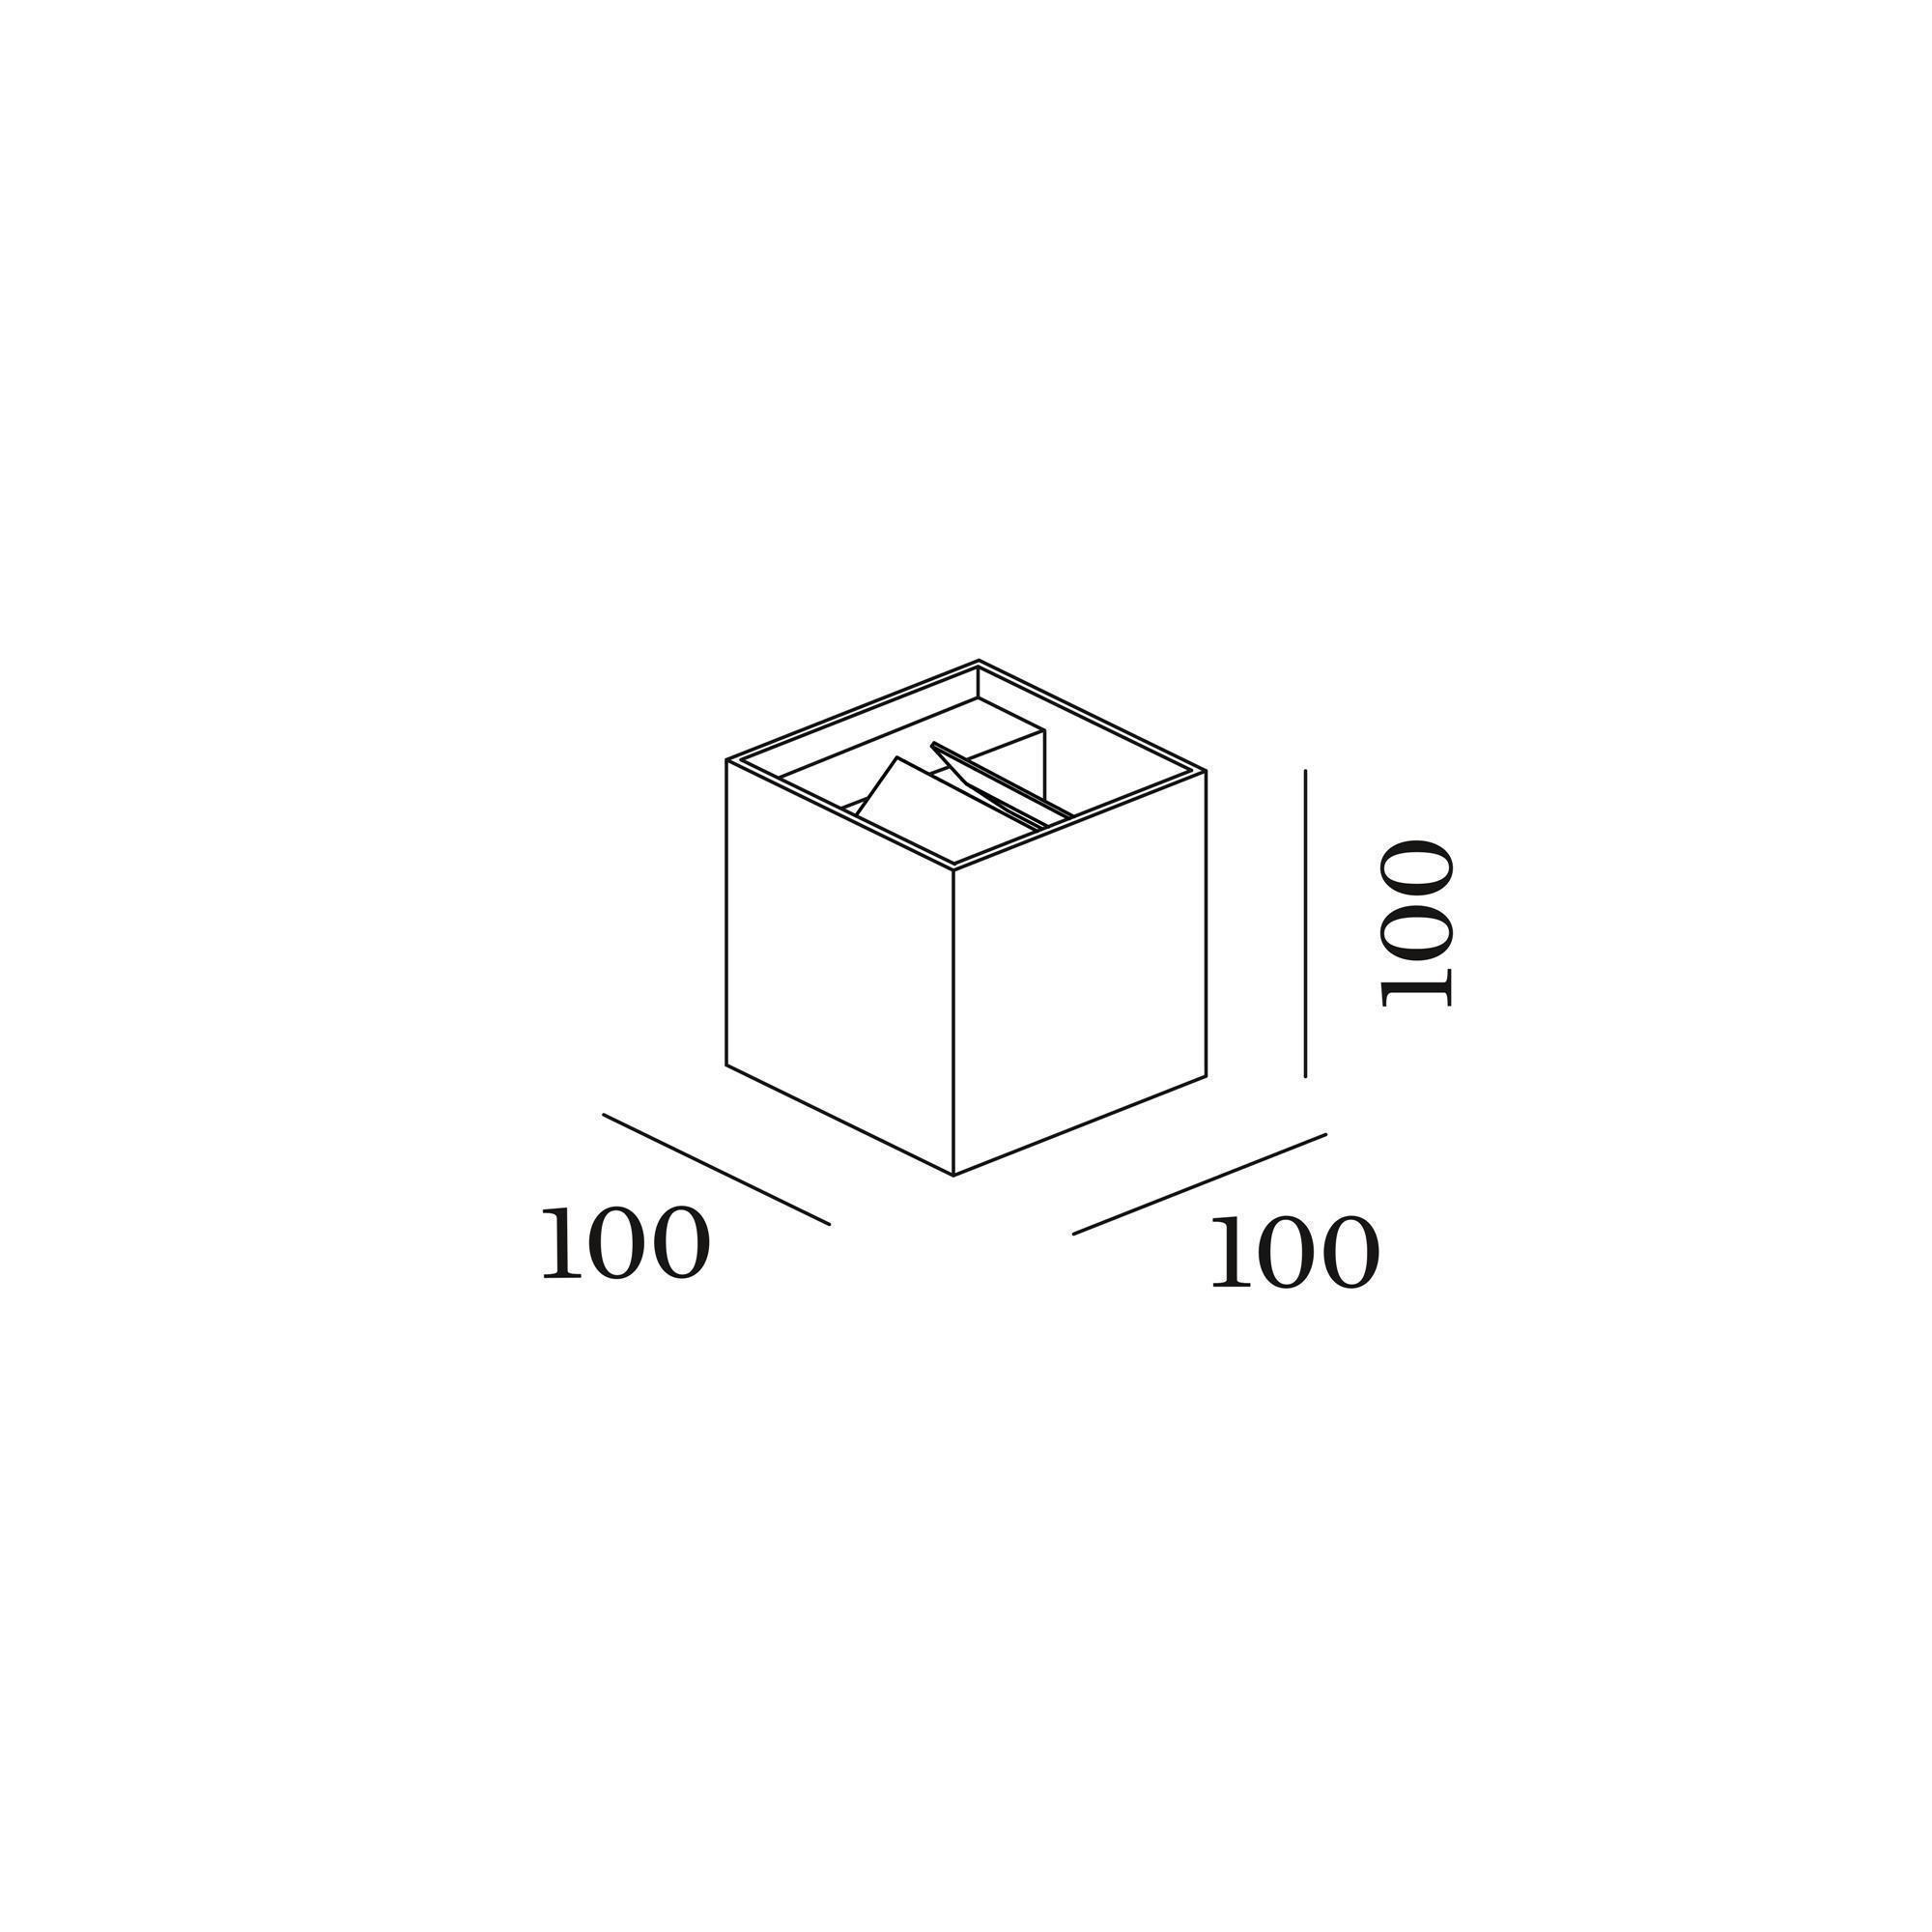 box_exterior_wall_surface_1.0